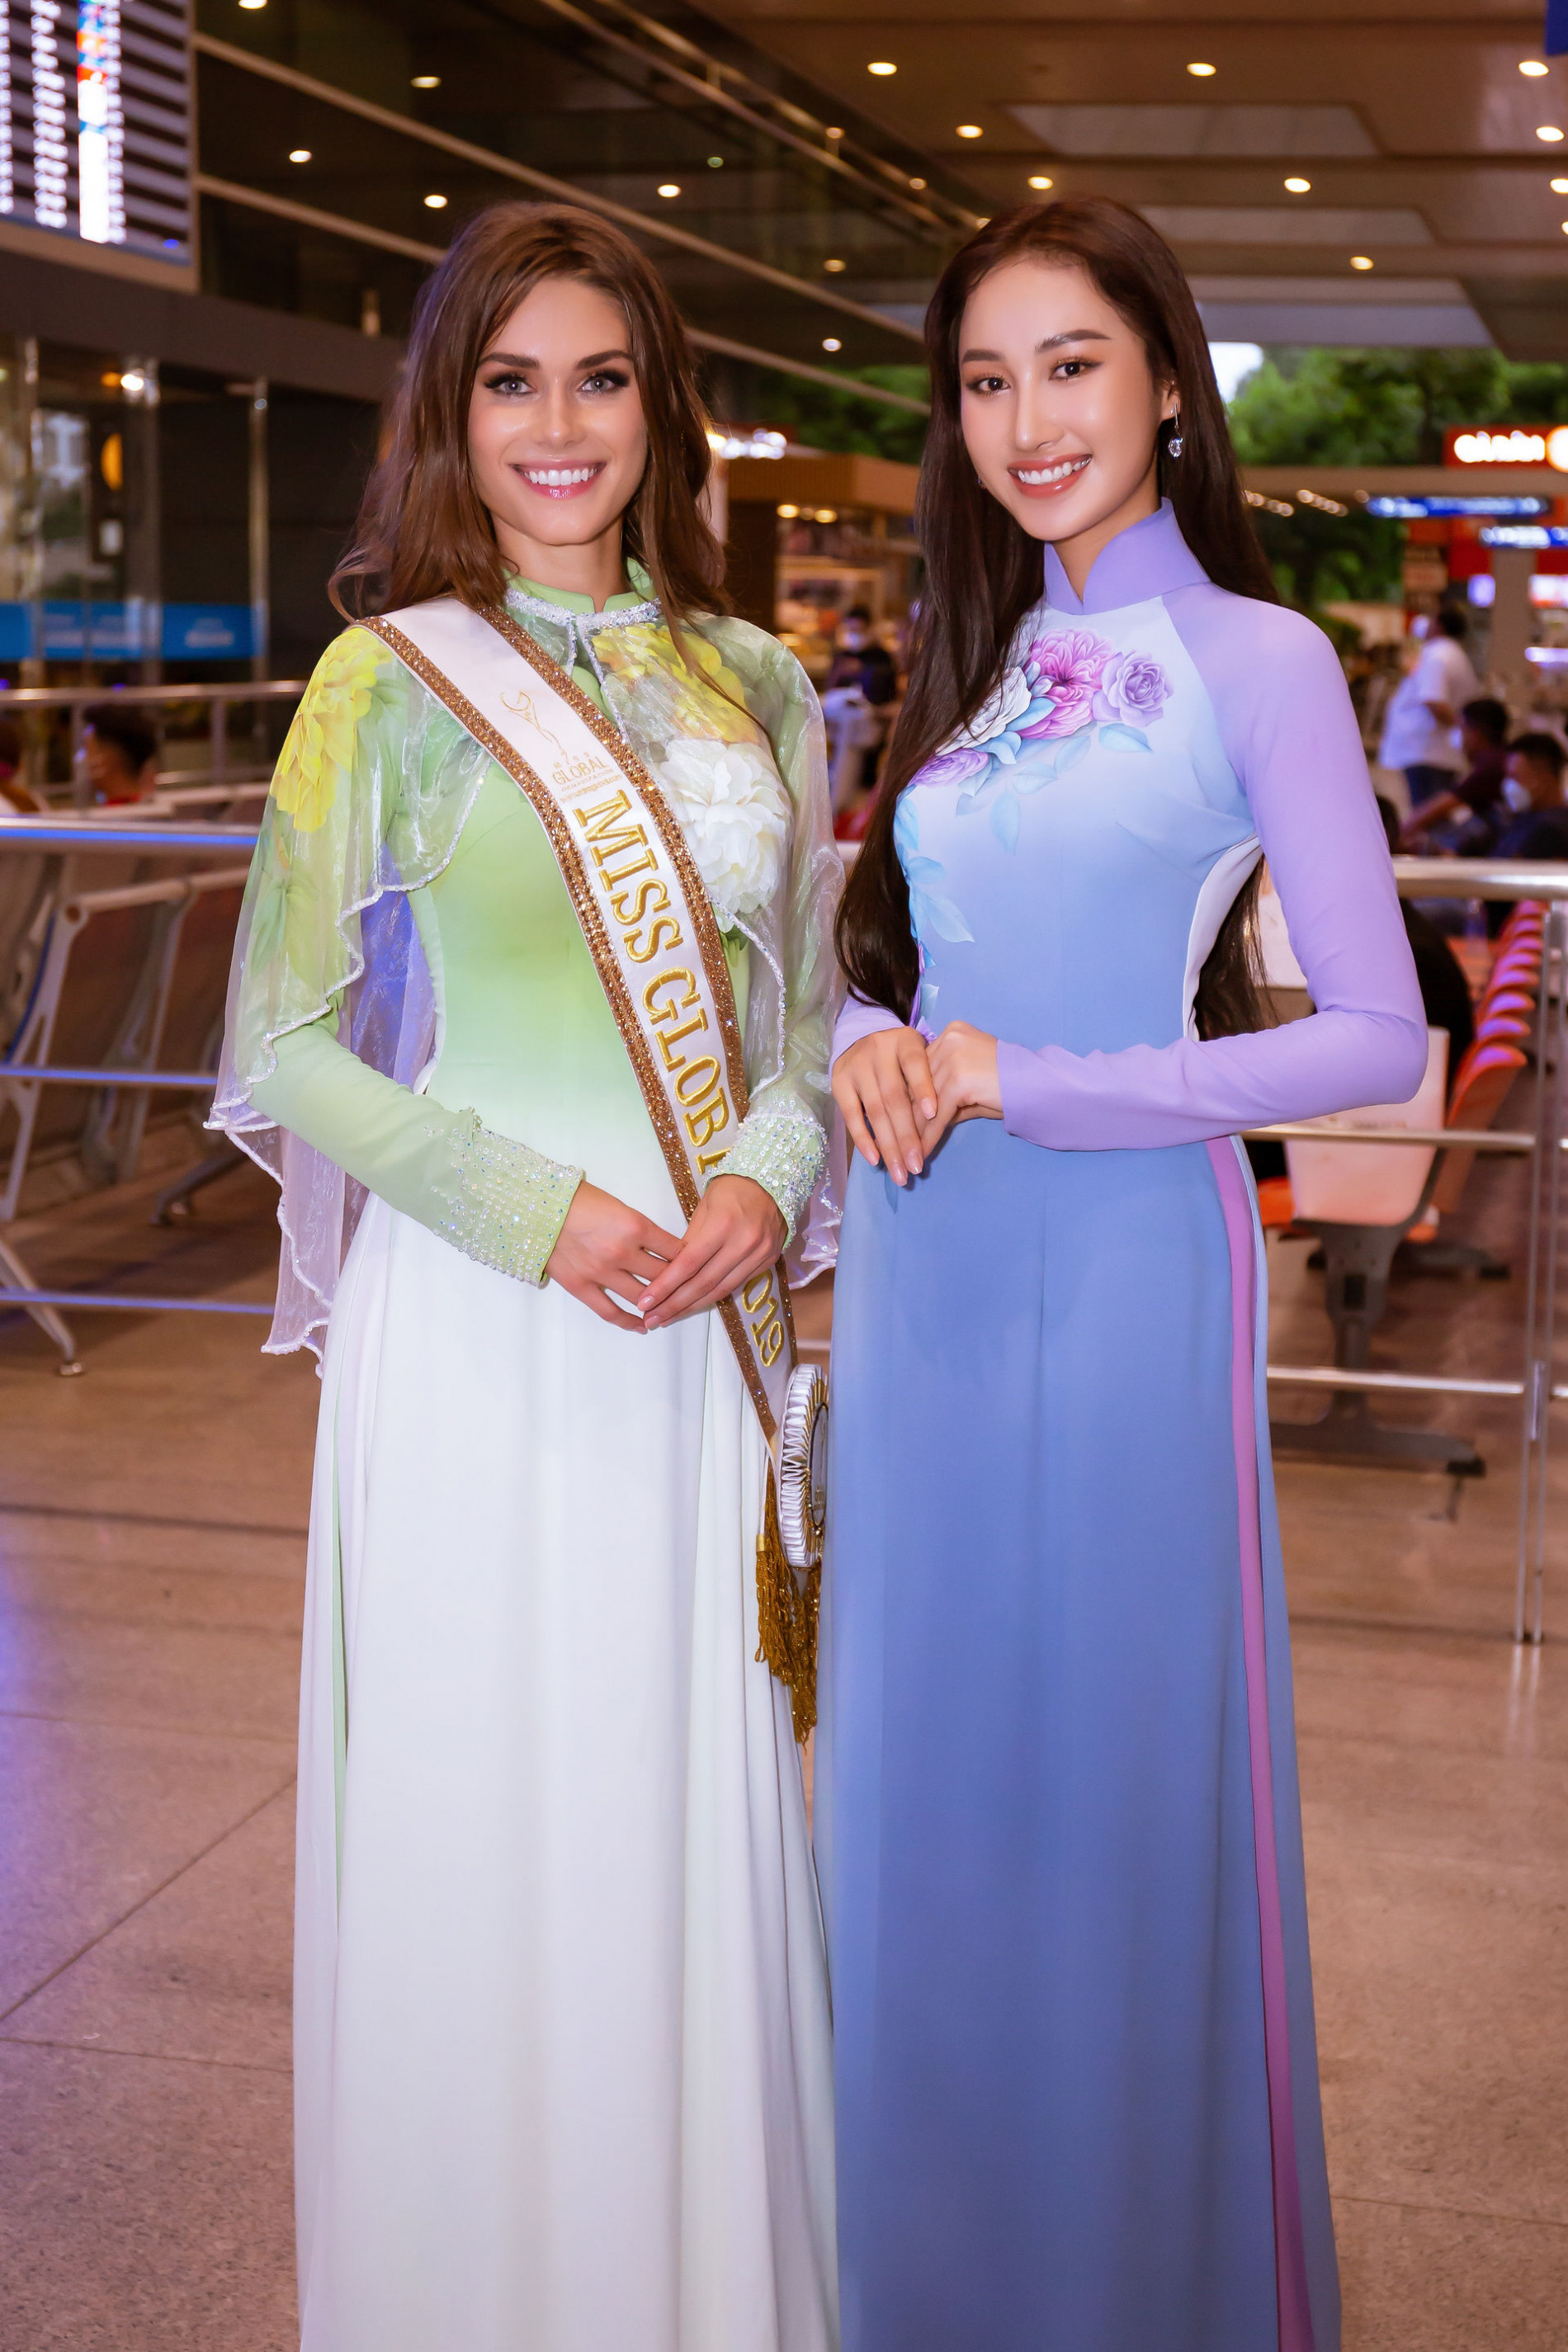 Hoa hậu Toàn cầu 2019 đến Việt Nam, diện áo dài đọ sắc với Đoàn Hồng Trang - 4